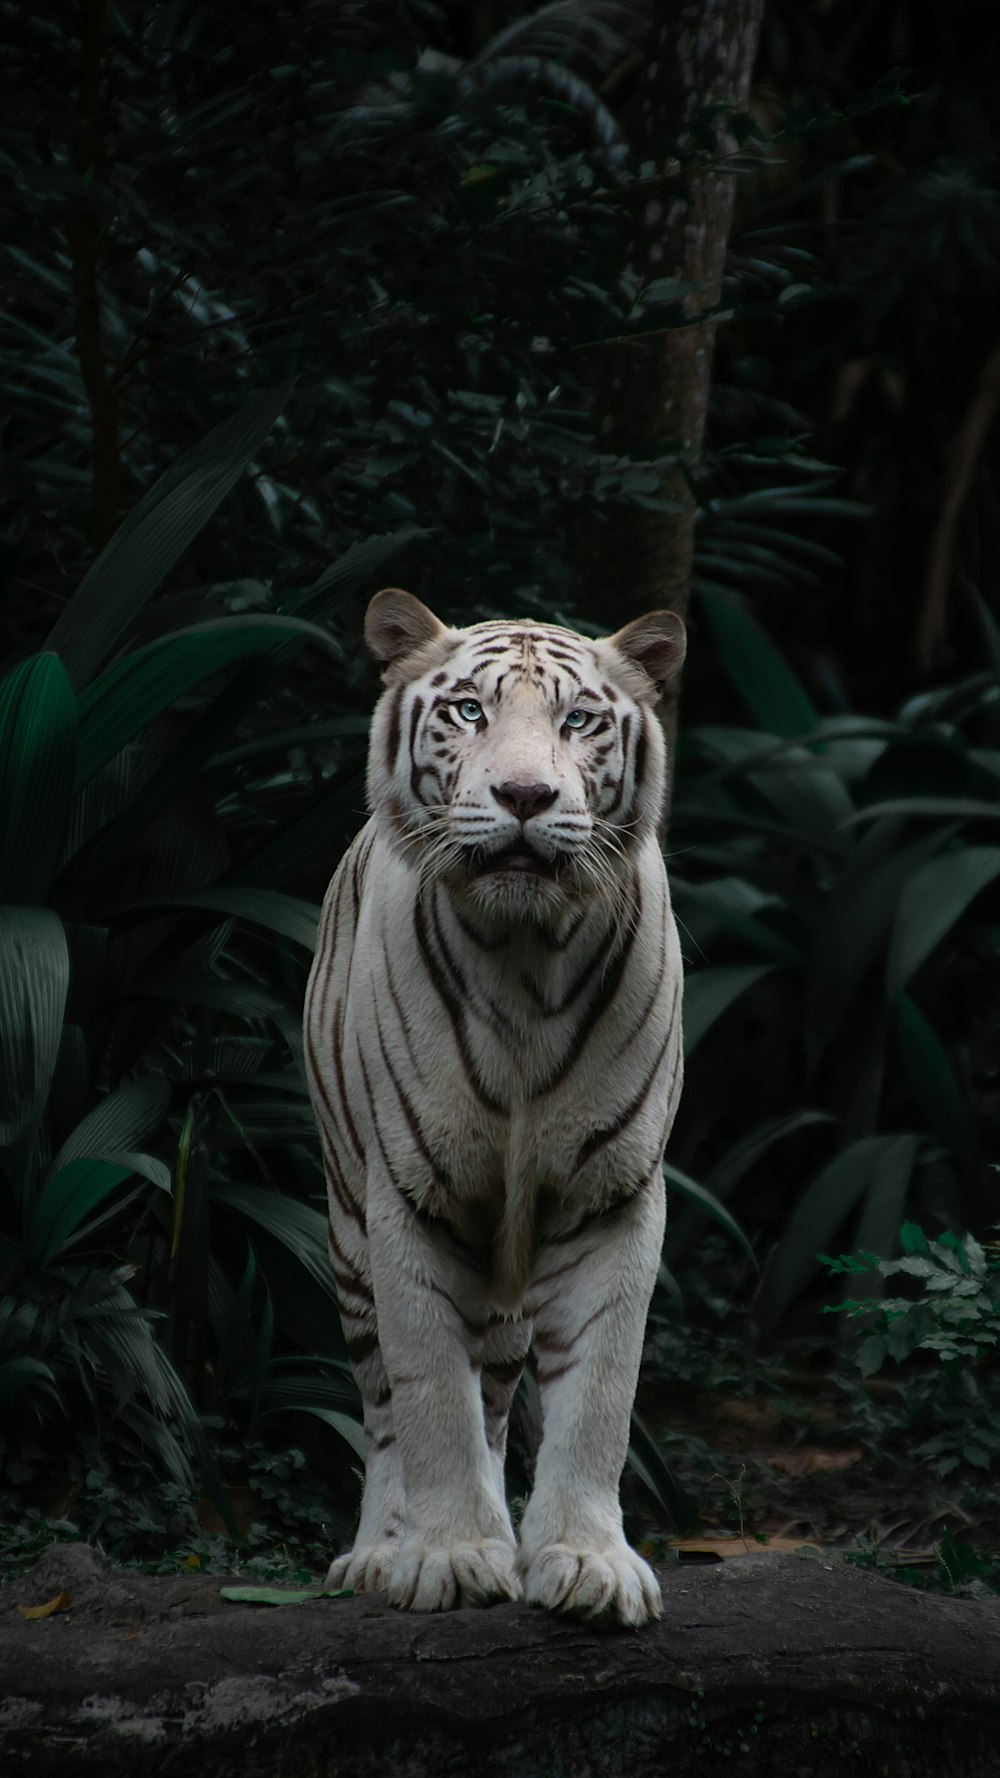 Hình ảnh hoàn toàn về loài hổ trắng với đầy đủ sự mê hoặc của chúng được chụp lại. Các bức ảnh này đều được lưu giữ và sẵn sàng để bạn chiêm ngưỡng và khám phá.